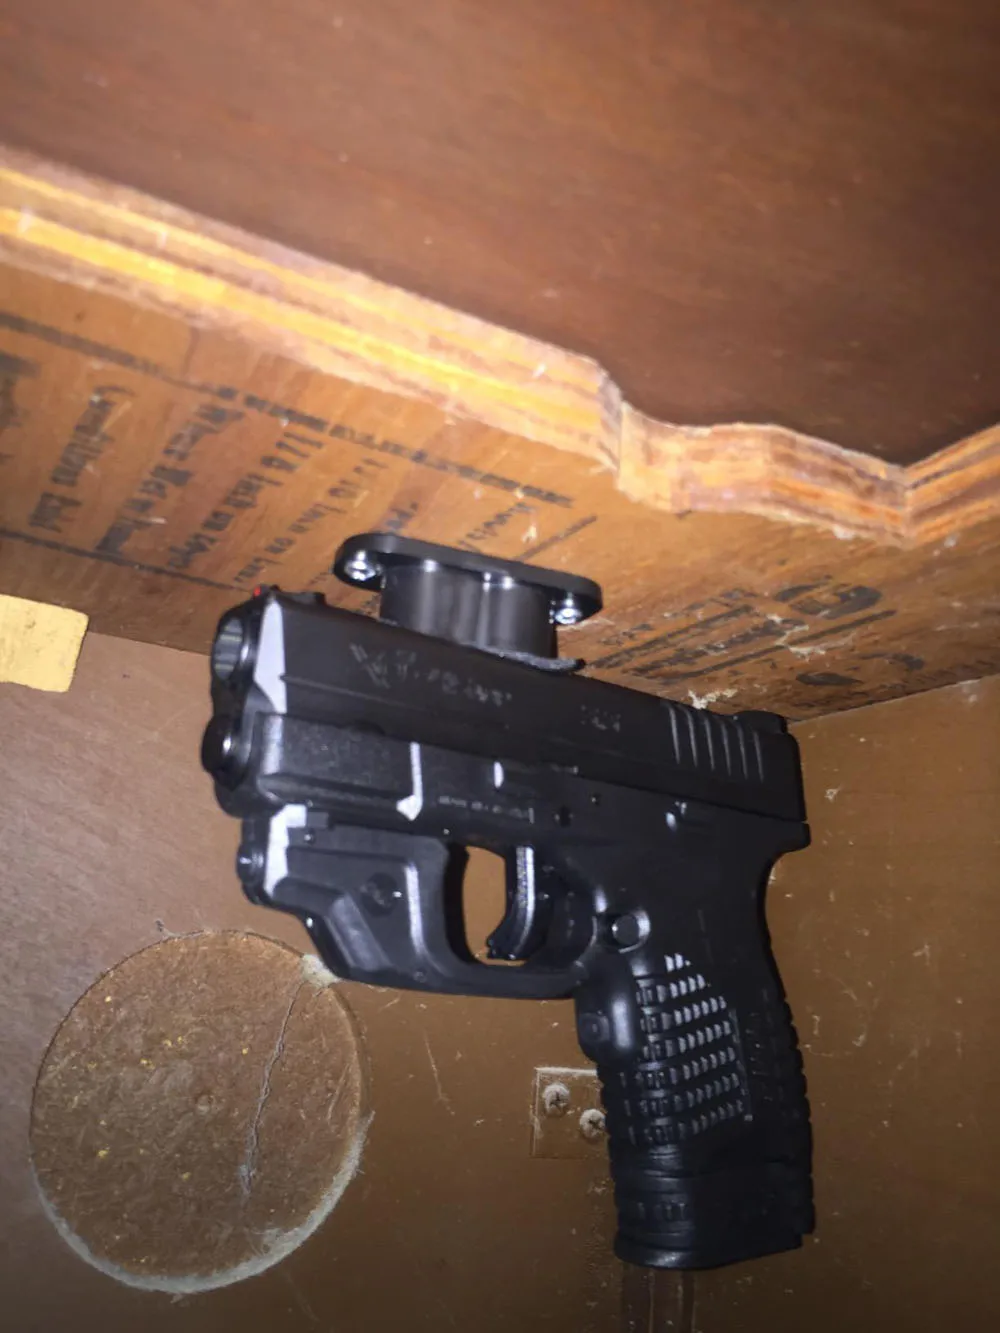 25LB рейтинг пистолет магнит скрытый пистолет держатель для стол кровать под стол автомобиля Бесплатная против царапин крышка и винты